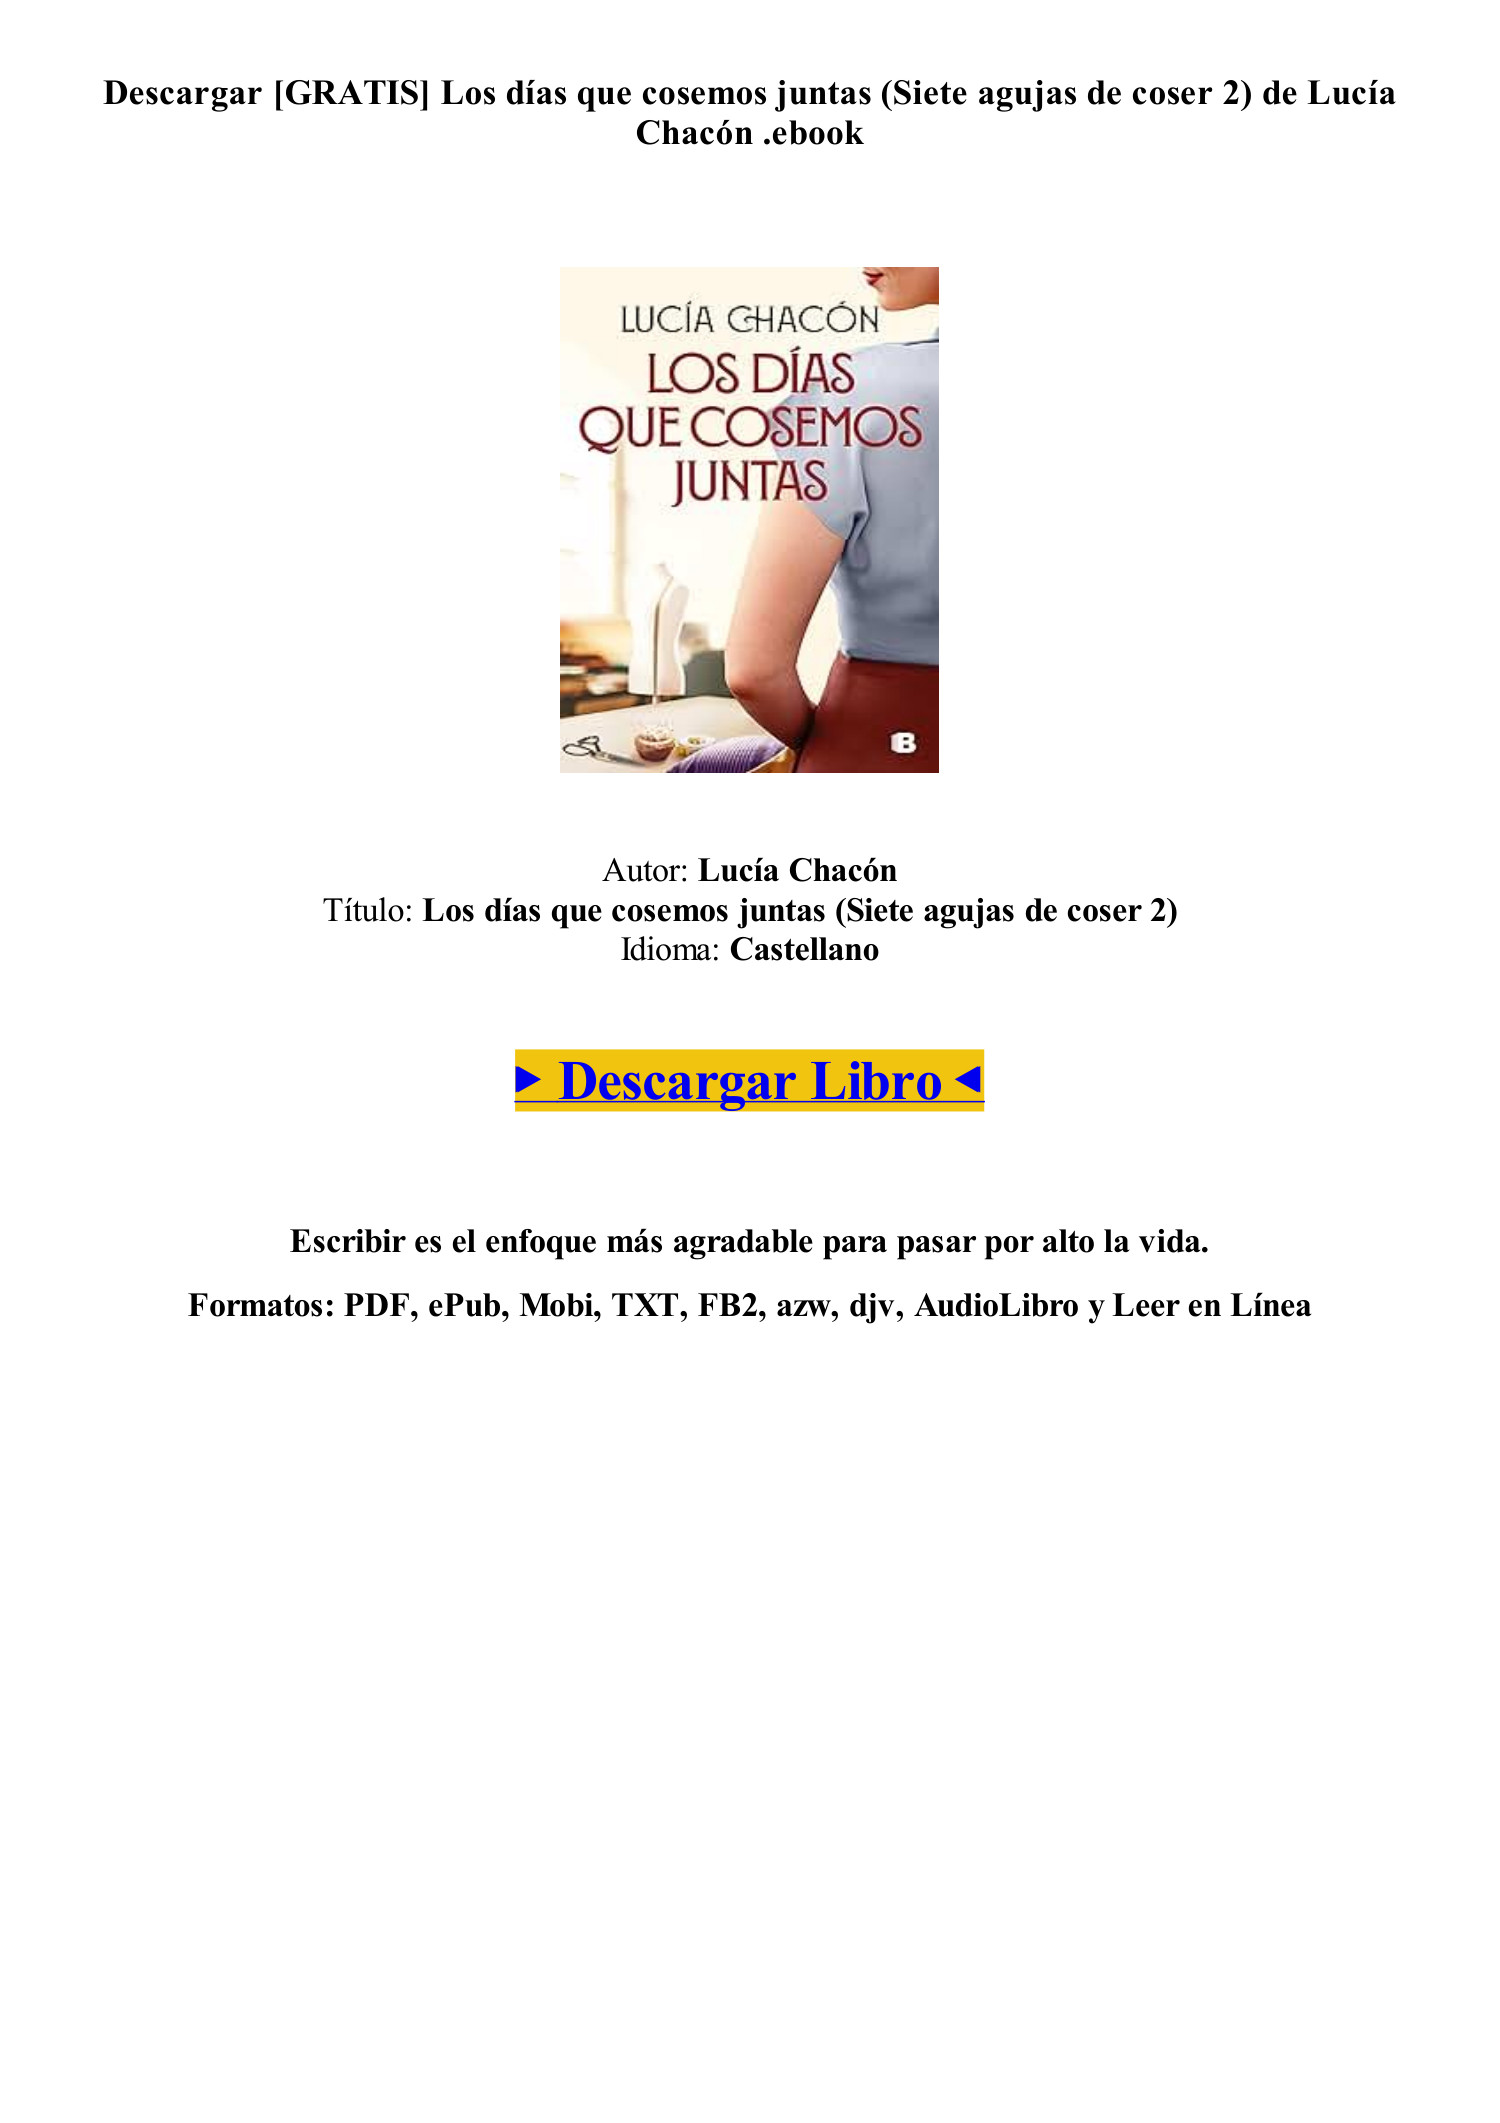 PDF FB2] (GRATIS) Los días que cosemos juntas (Siete agujas de coser 2) de  Lucía Chacón Libro.pdf